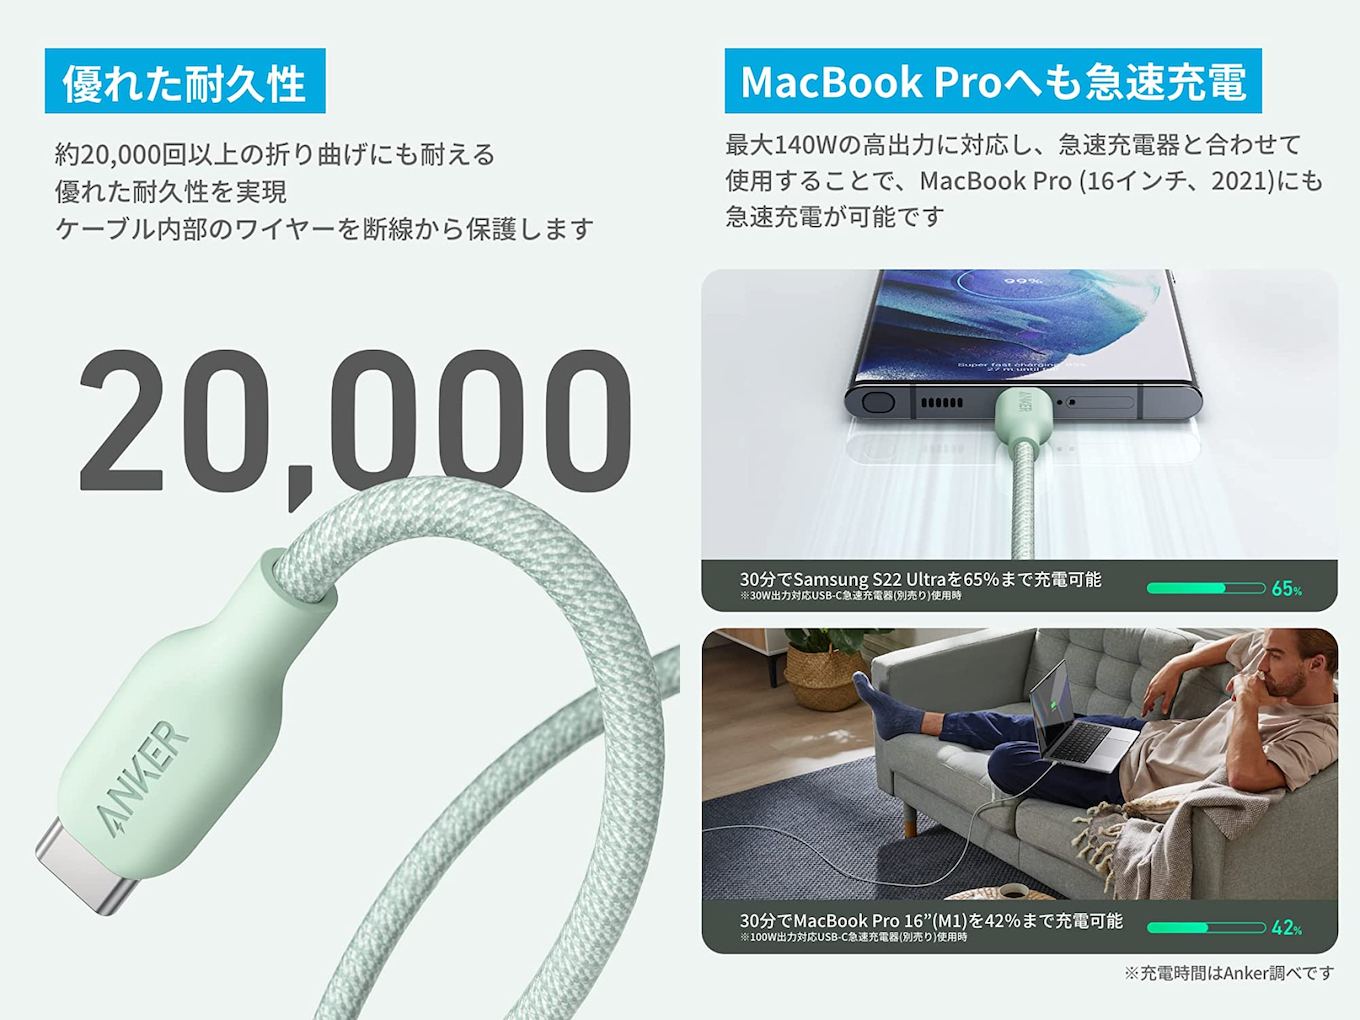 セール品 Anker 543 エコフレンドリー USB-C ケーブル 植物由来素材 100W 急速充電 MacBook Pro 2020 iPad  Air Samsung Galaxy S21各種対応 1.8m